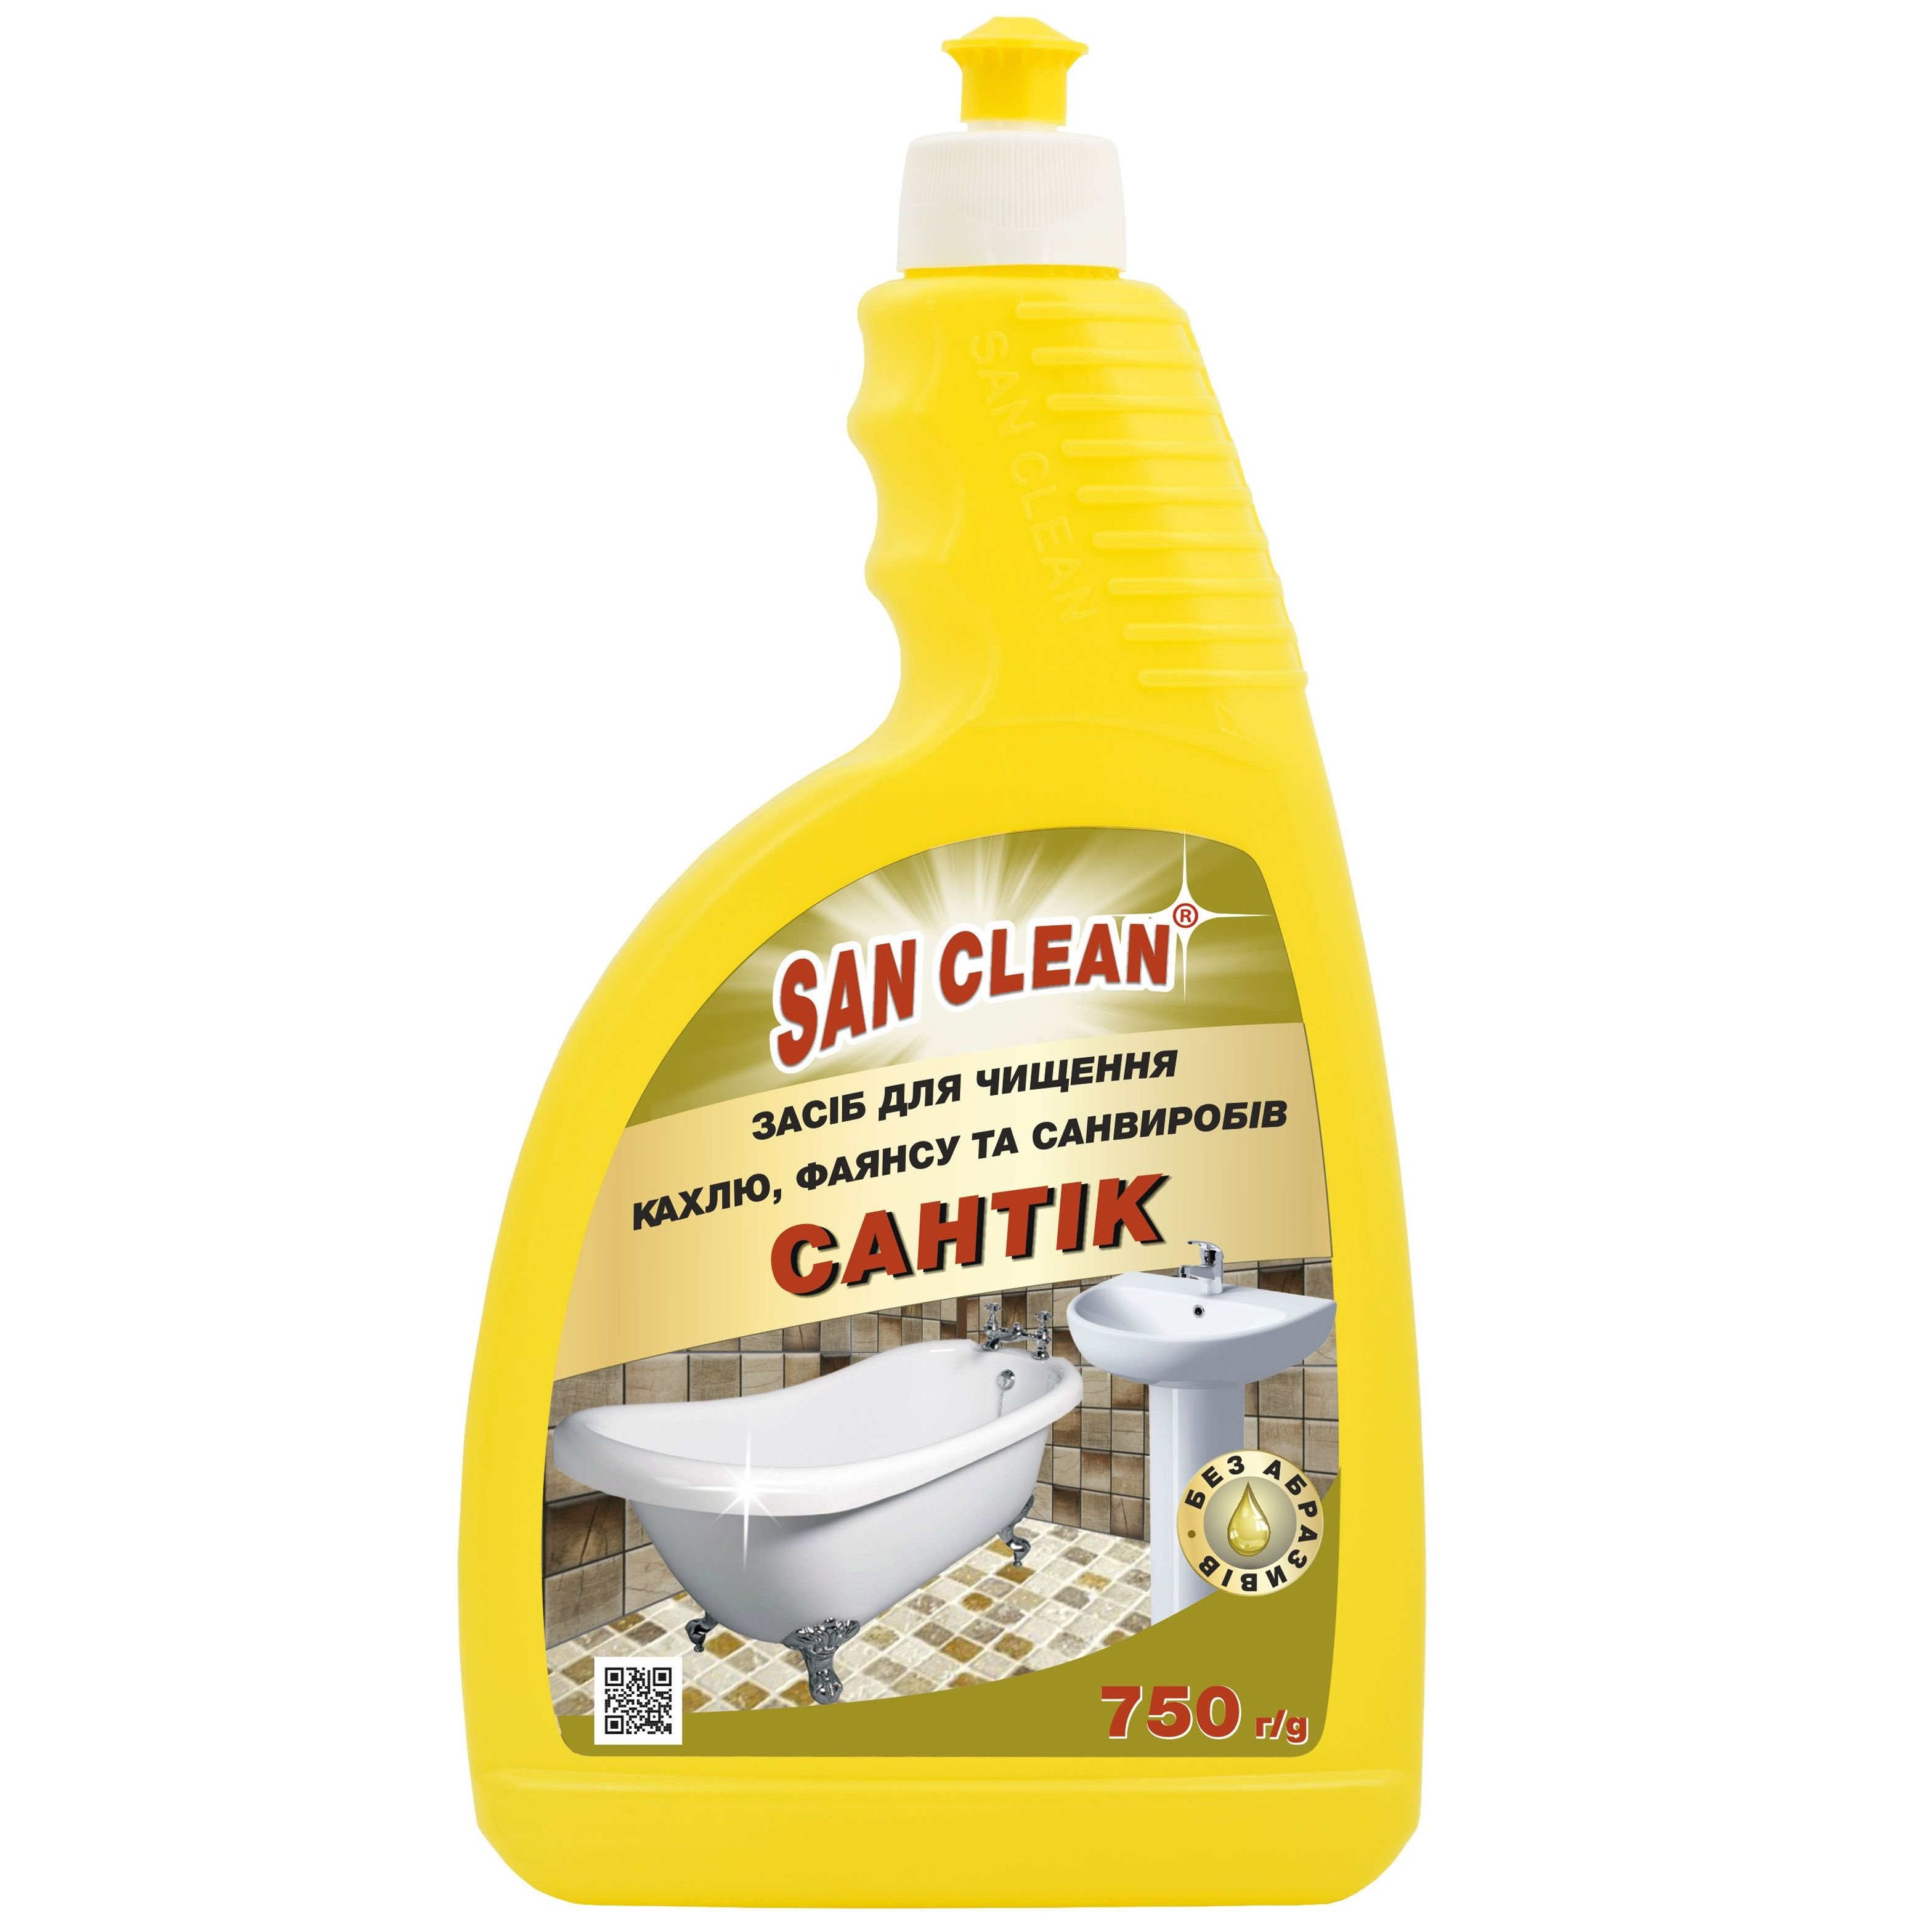 Средство очищающее San Clean Сантик для сантехники, 750 мл - фото 1